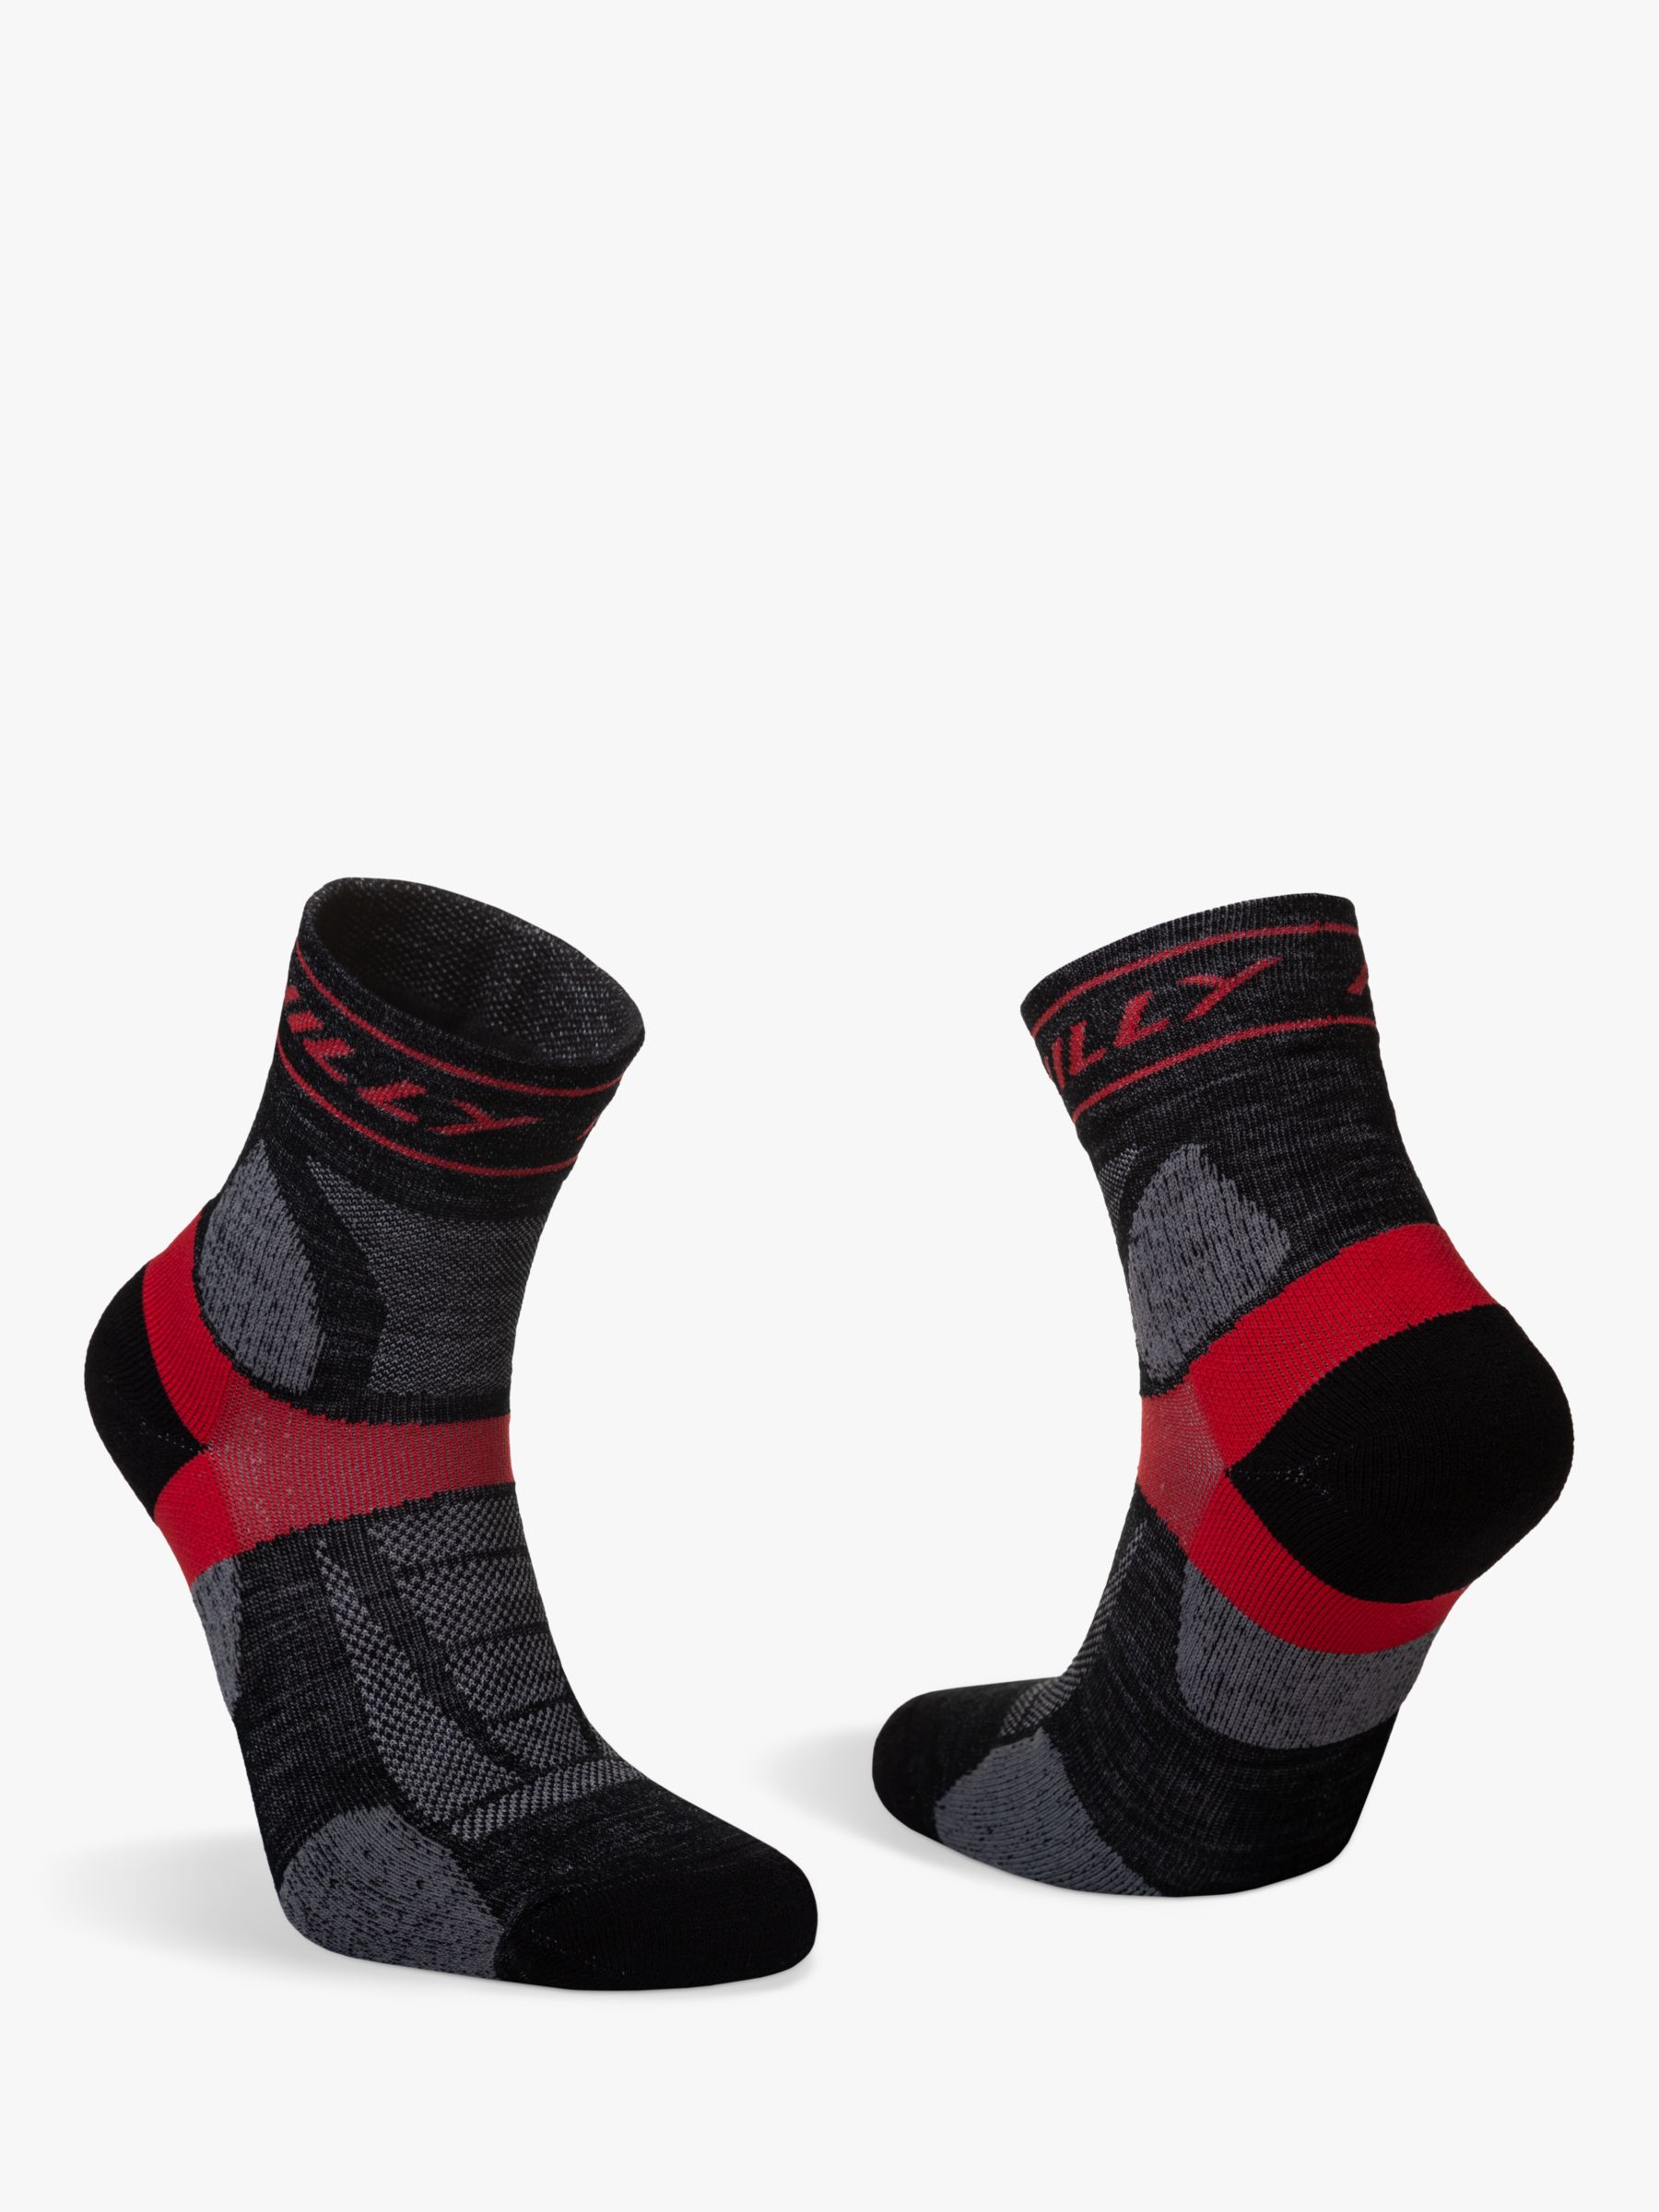 Hilly Trail Anklet Med Running Socks, Black/Red, S